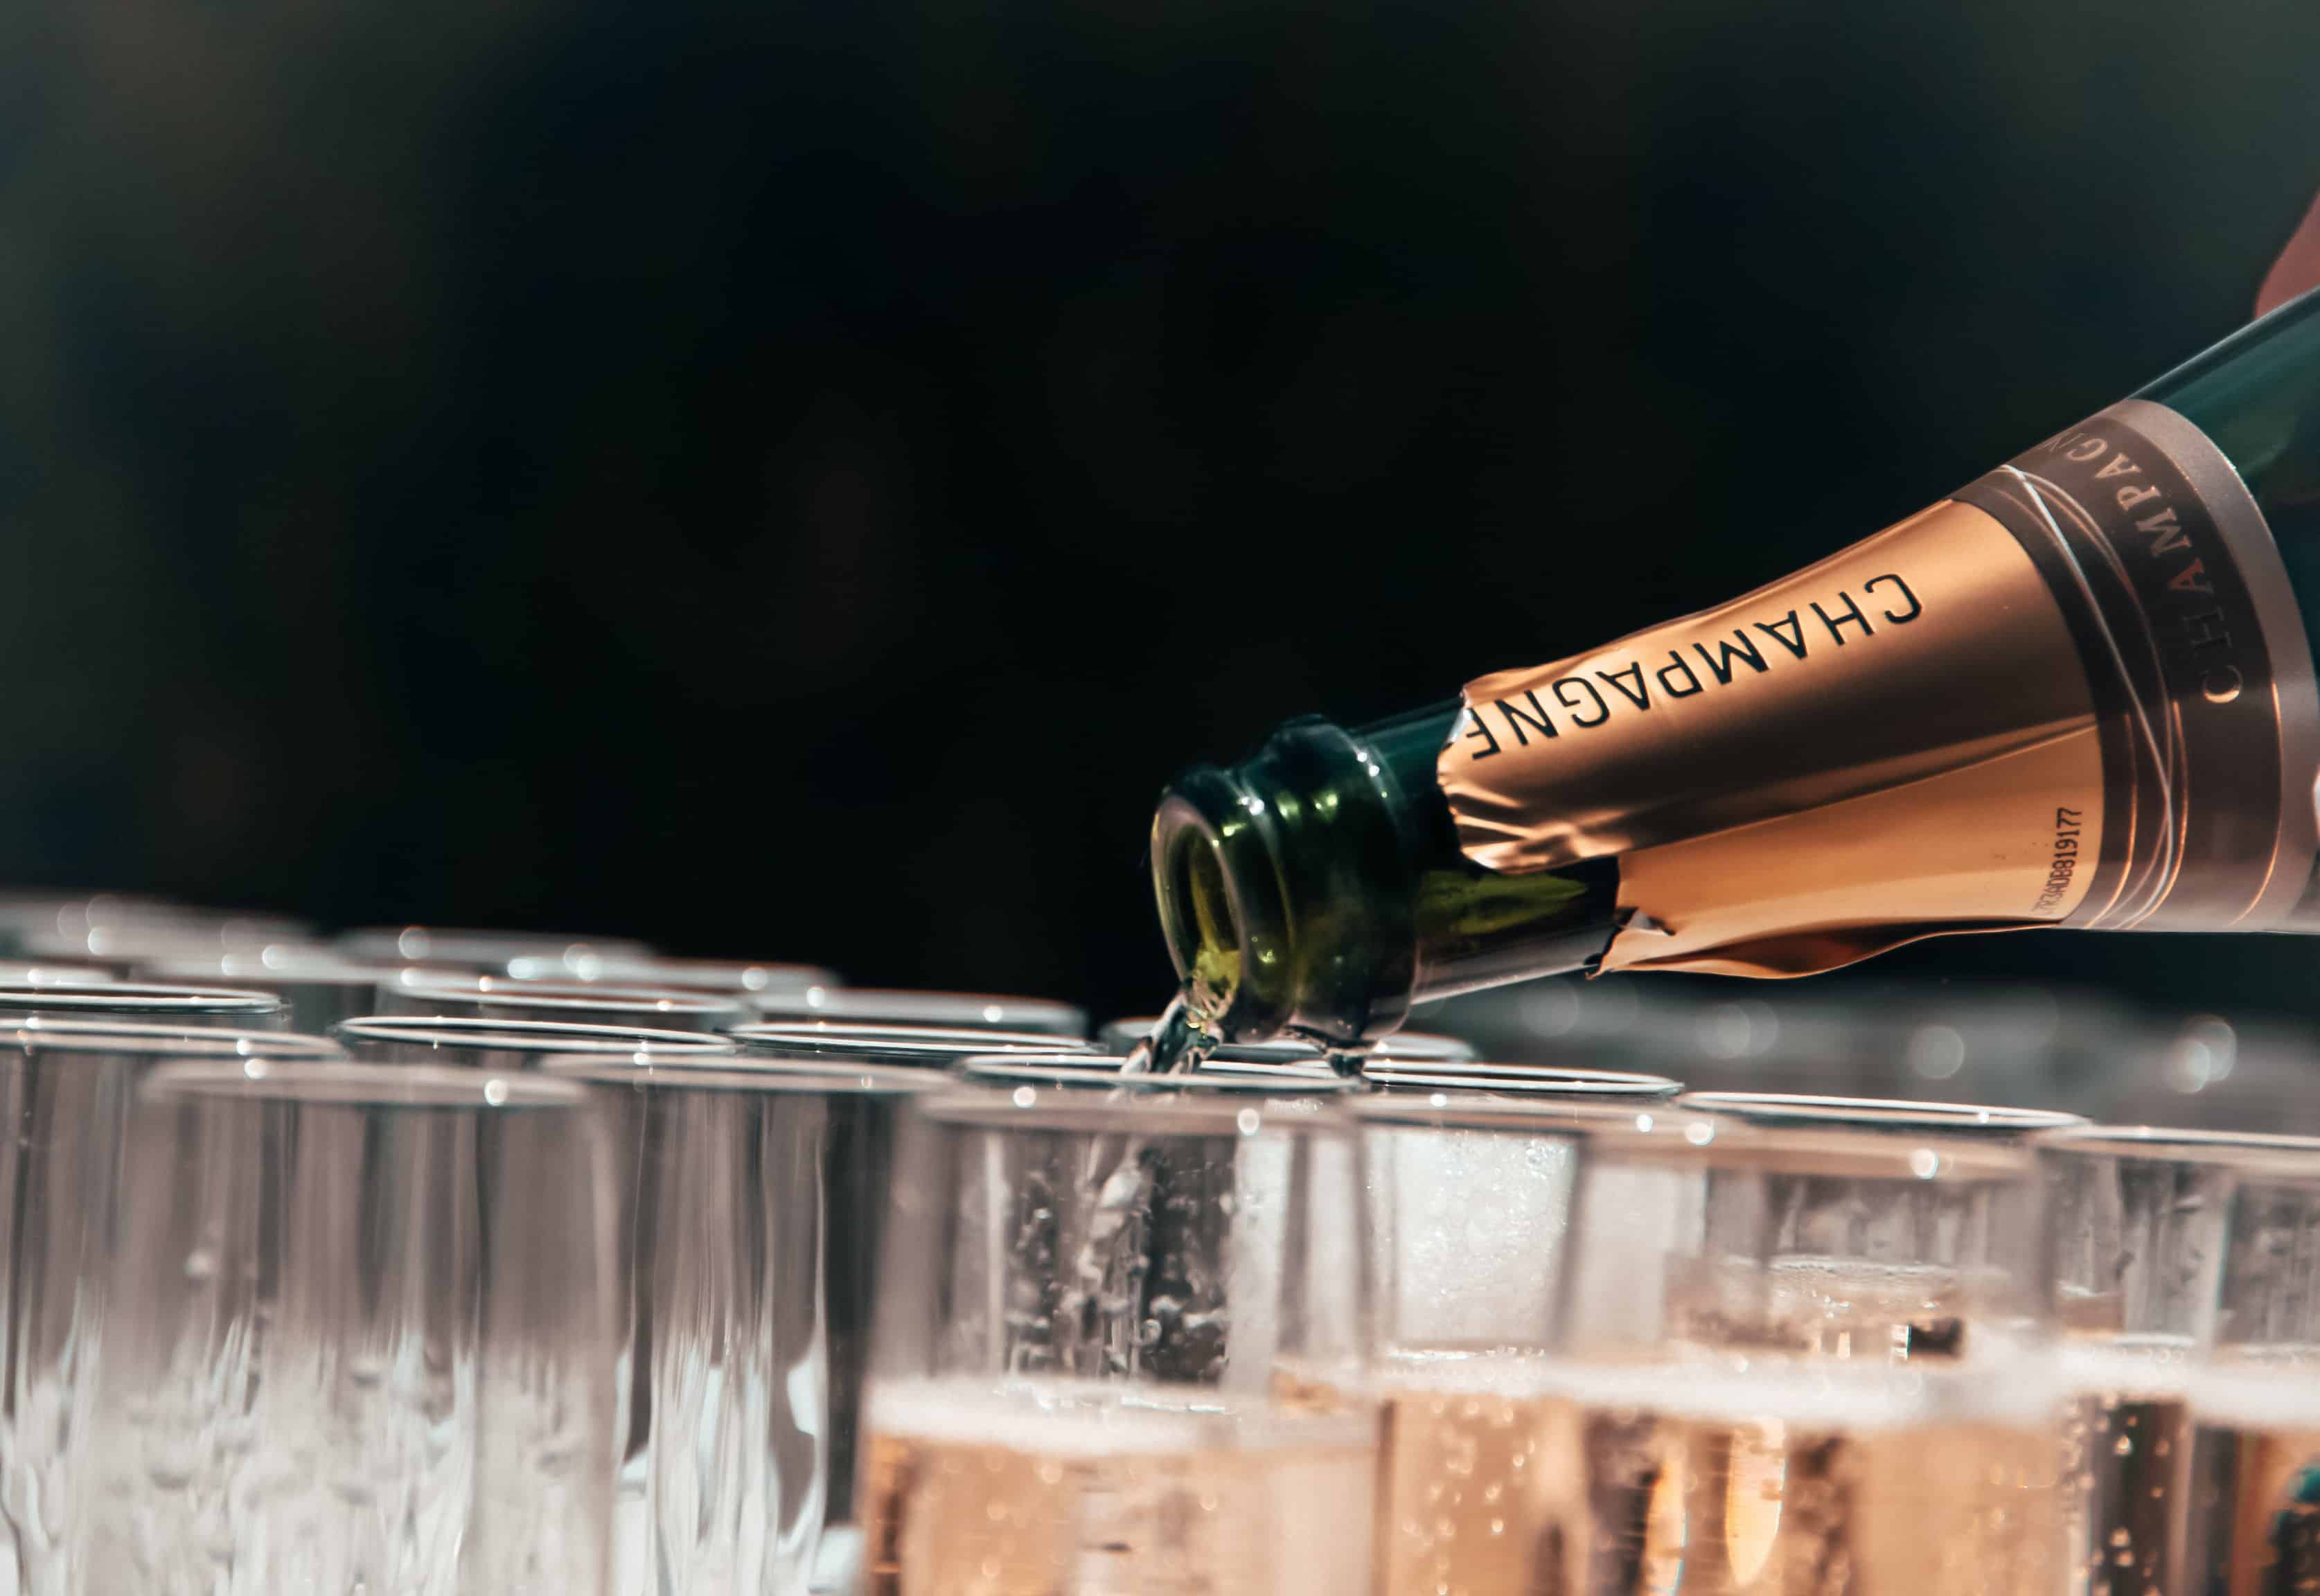 Le Champagne Dom Pérignon : un vin de luxe et prestige 3